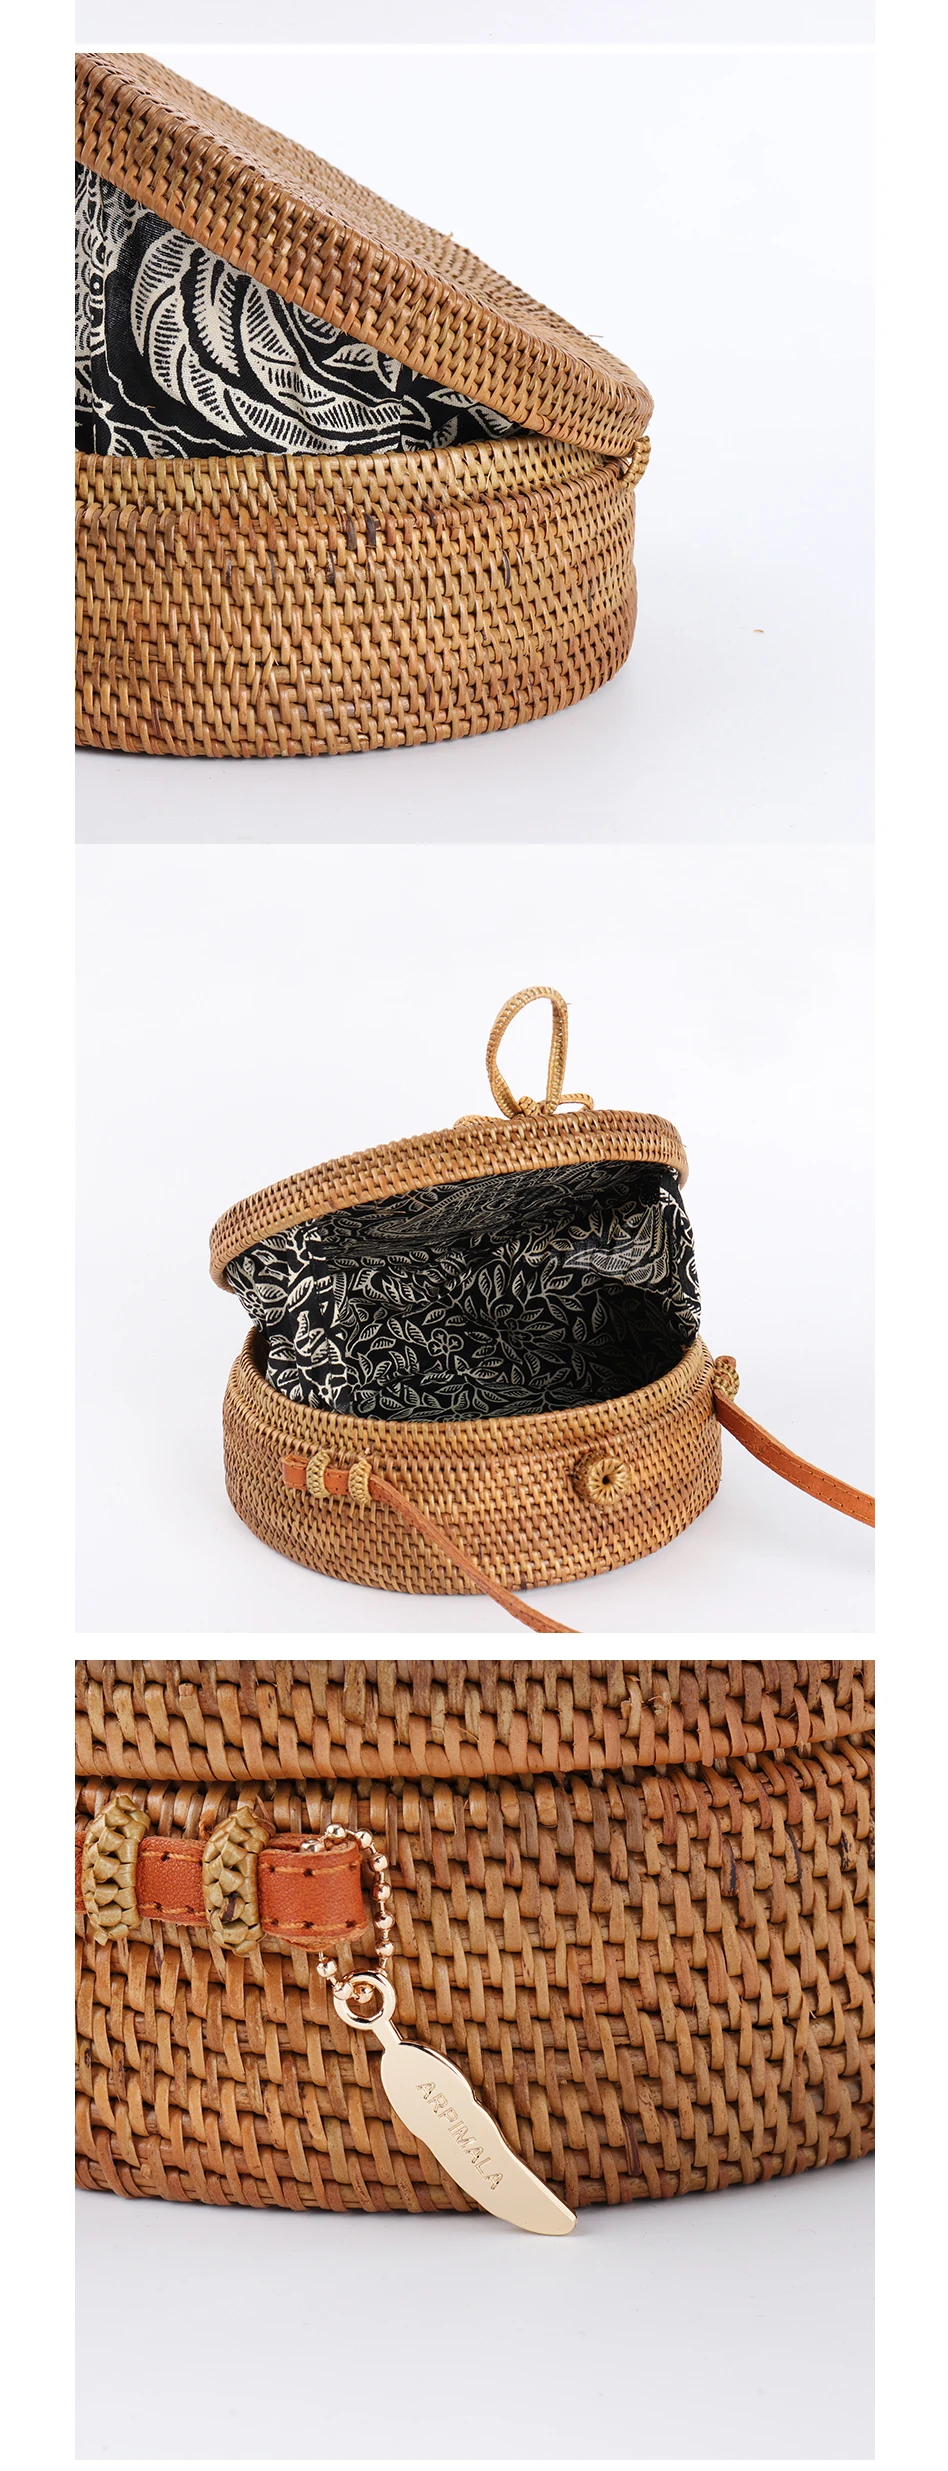 BoBoSaLa How Bali Circle Straw Bags For Women Handmade Round Beach Bag Summer Rattan Handbags Butterfly Women Messenger Bag